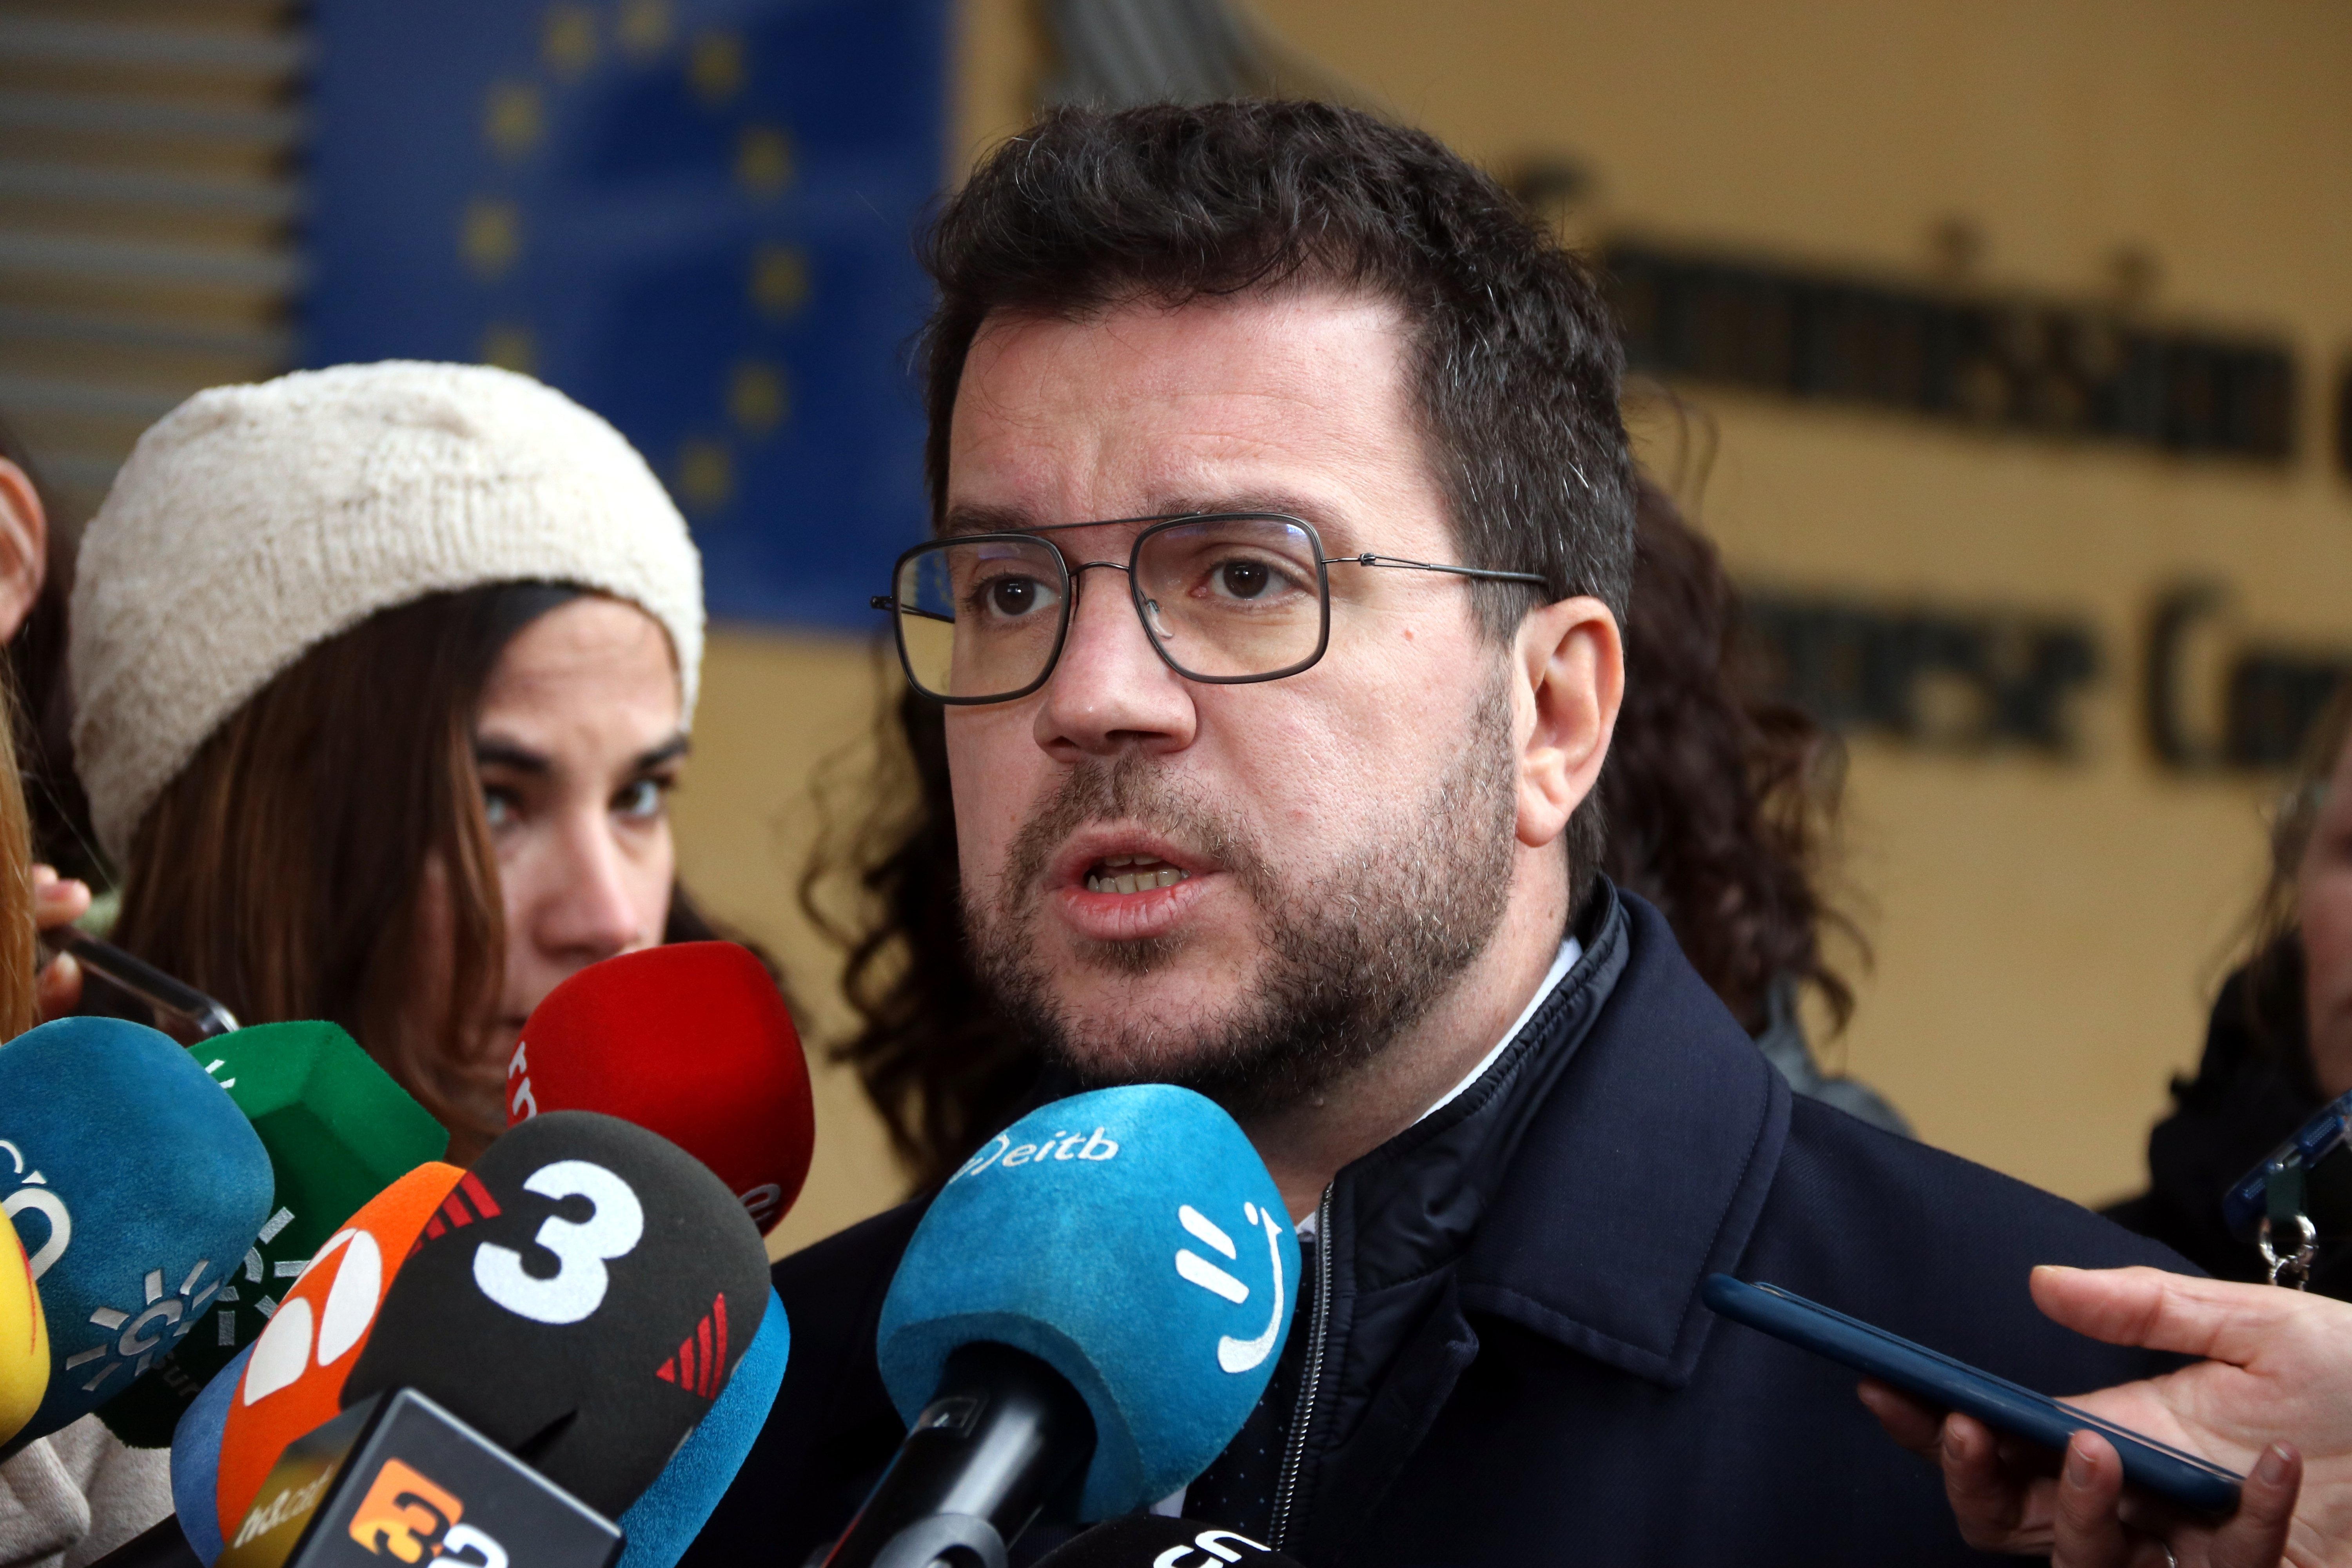 Aragonès adverteix Junts que “el que voldrien els poders de l’Estat” és que no s’aprovi l’amnistia